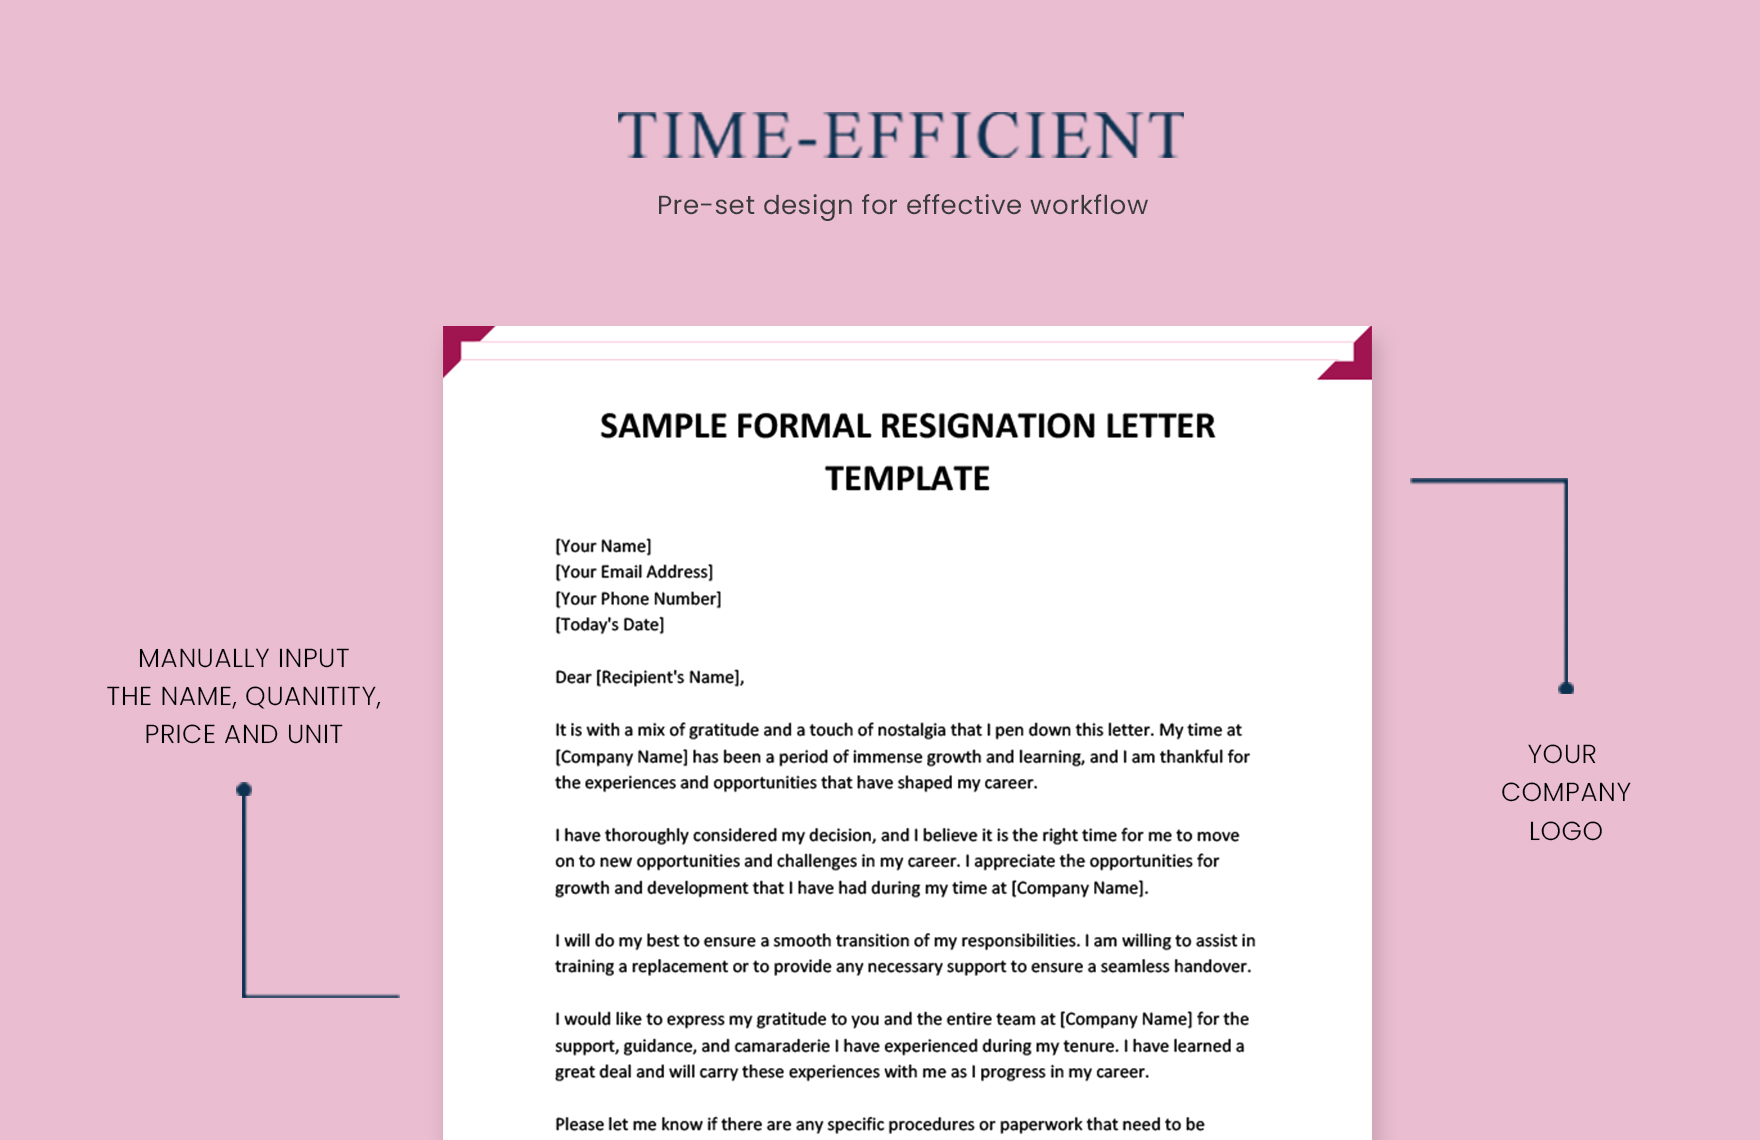 Sample Formal Resignation Letter Template